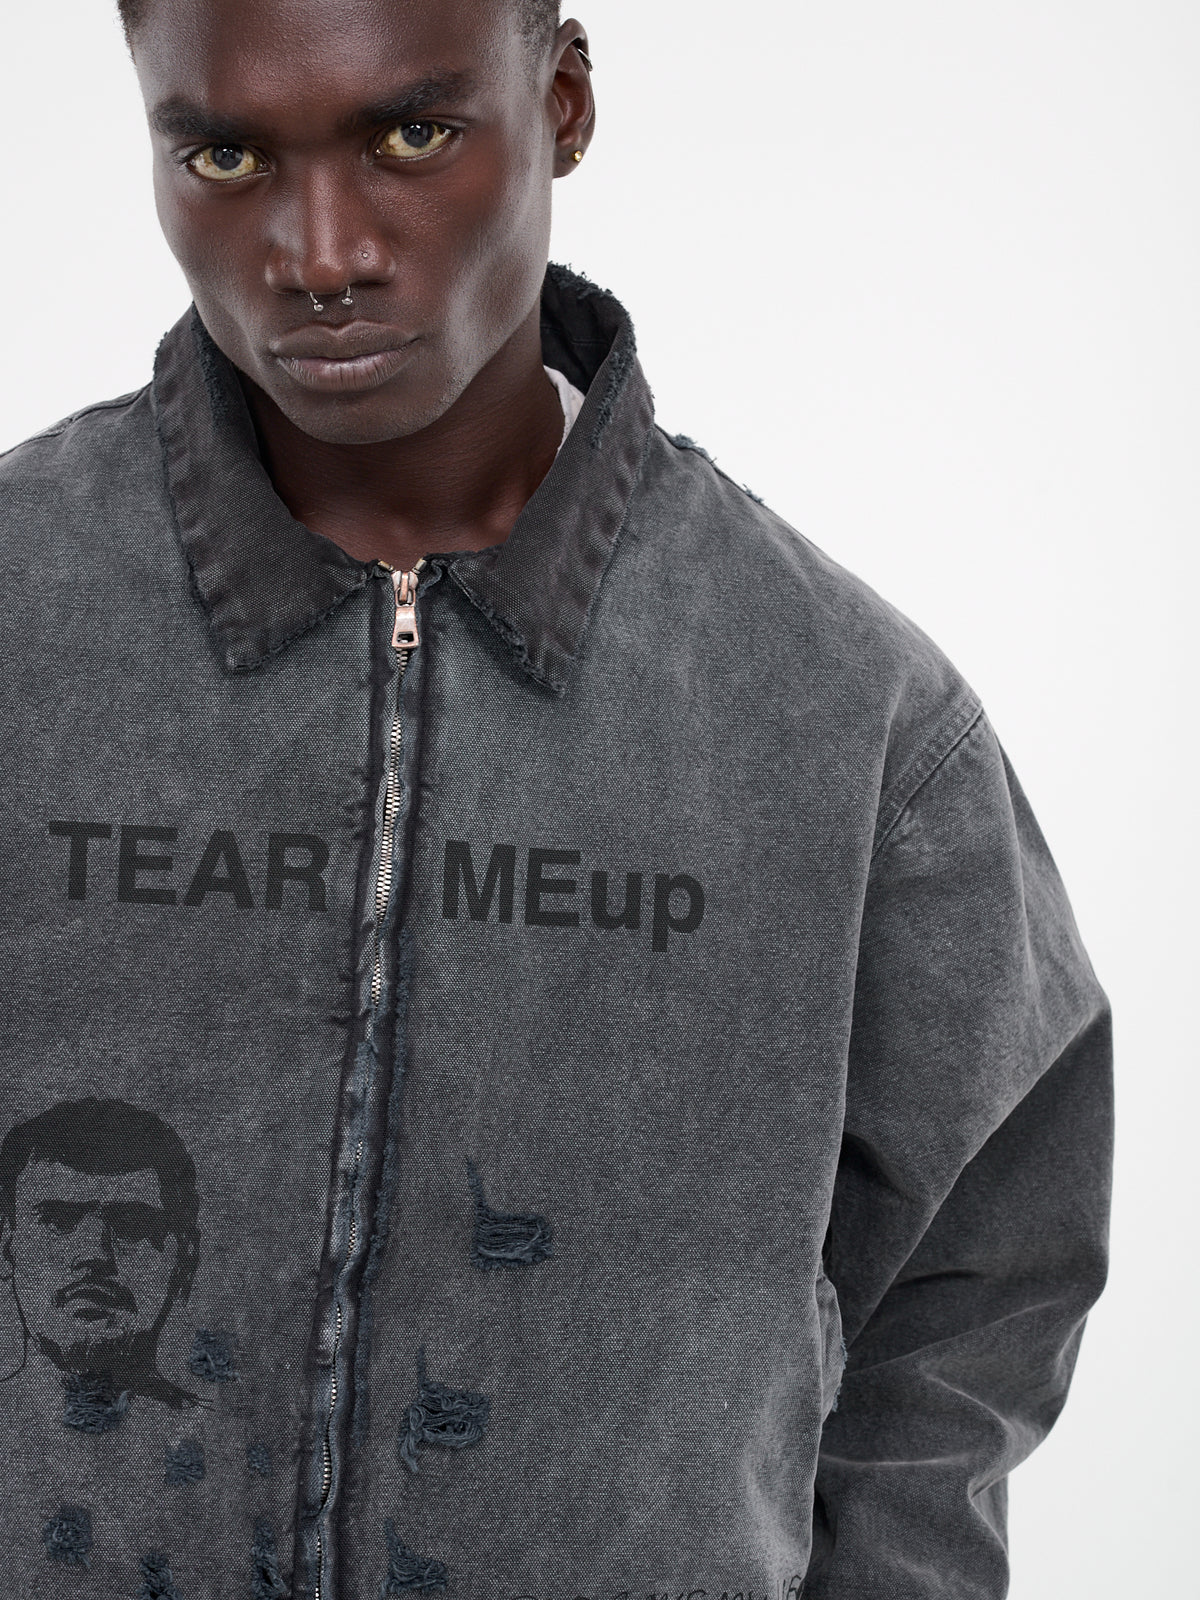 Tear Meup Canvas Jacket (7UO24Q1005-BLACK)